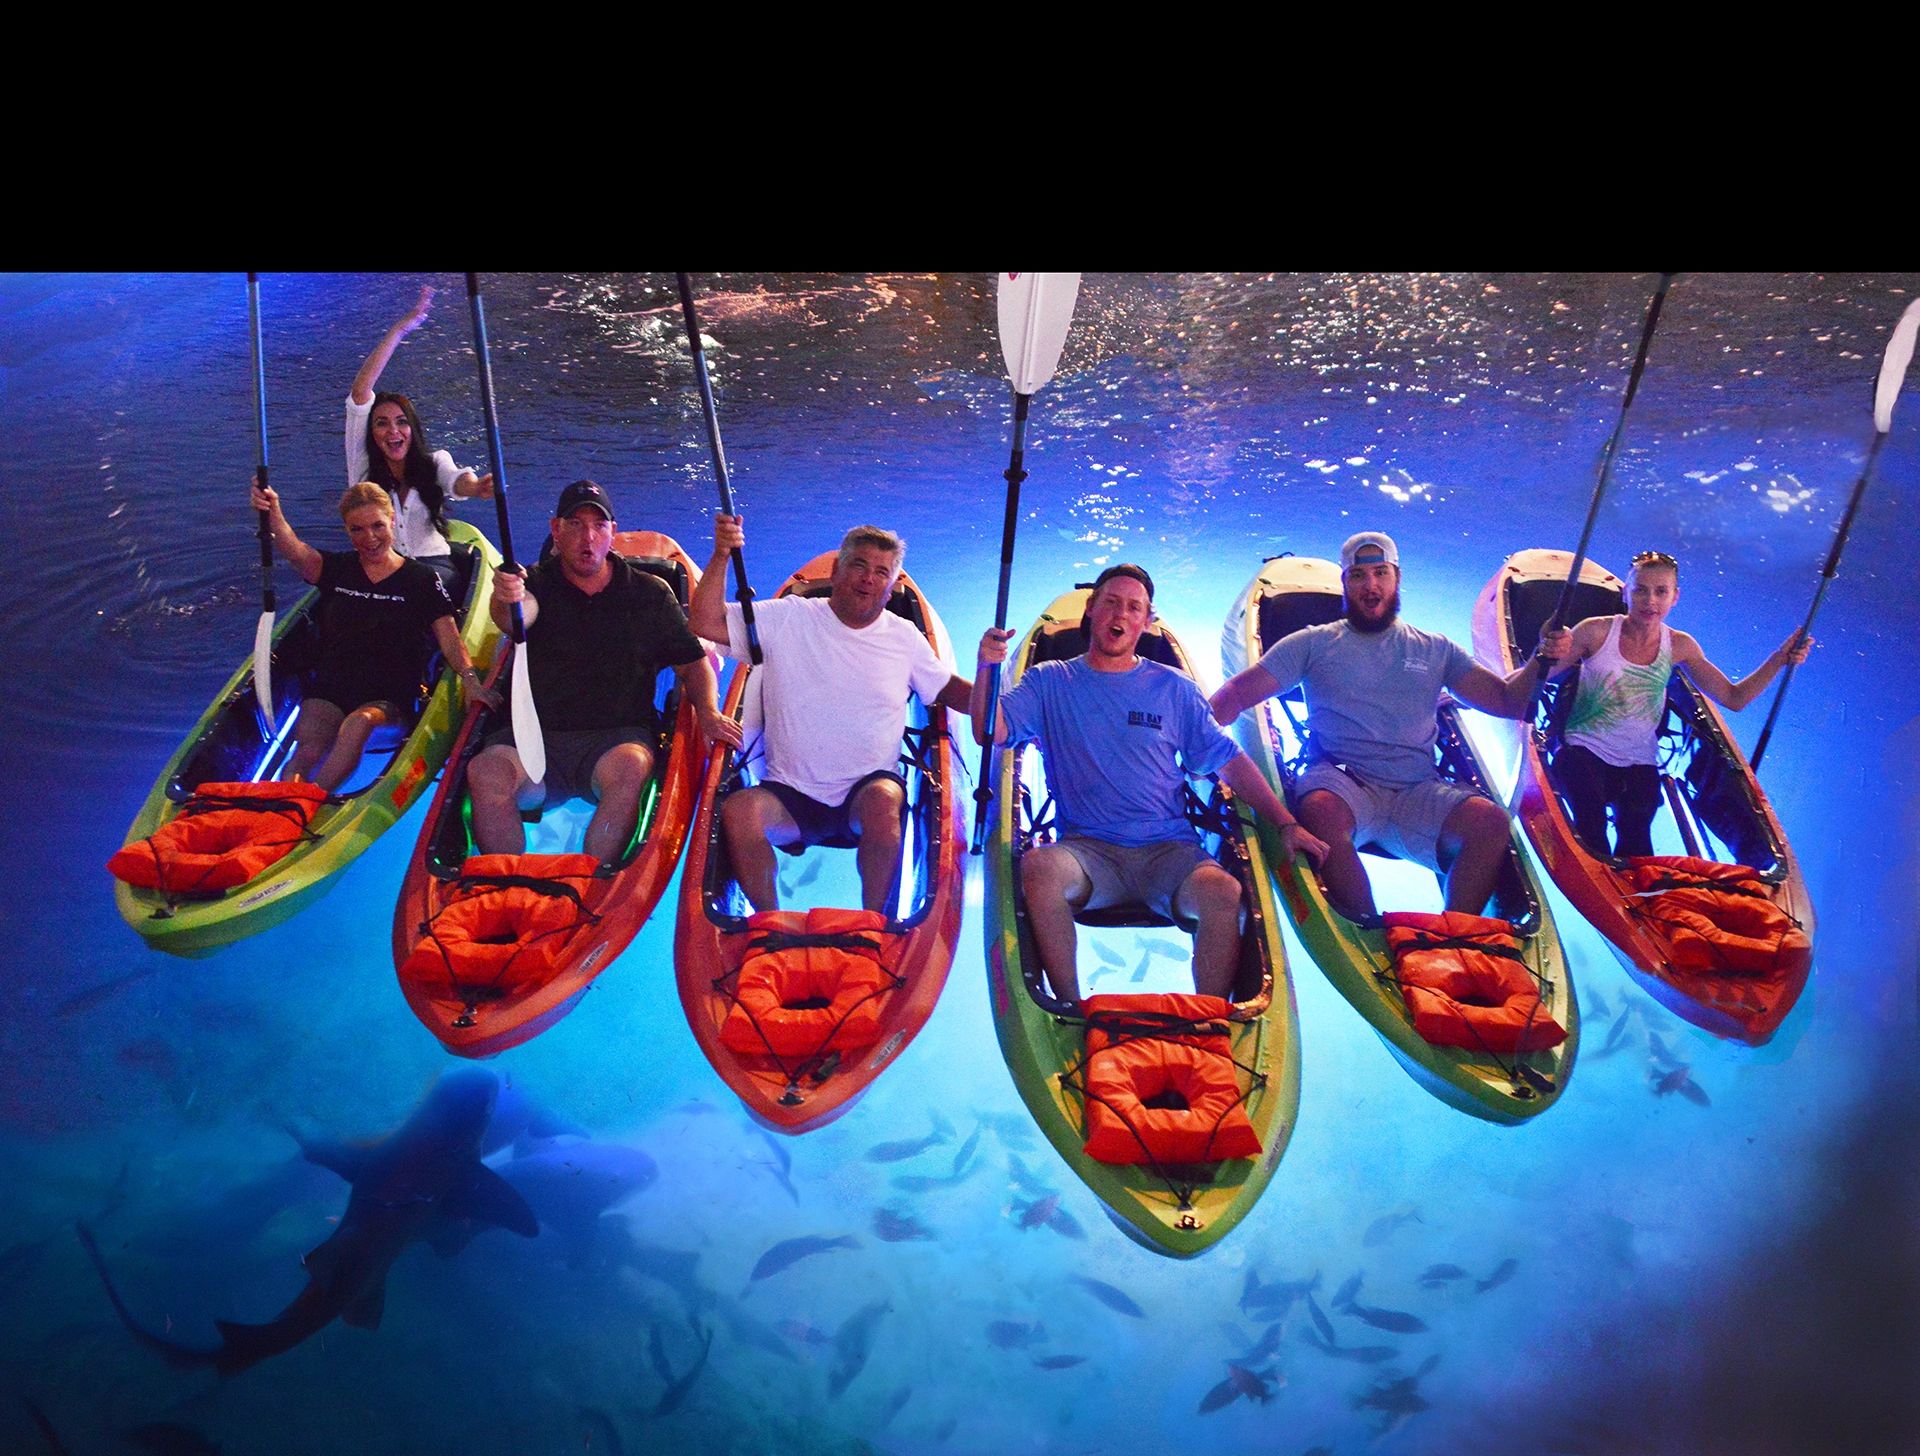 Ibis Bay Paddle Sports Key West's Original LED Night Kayak Tours